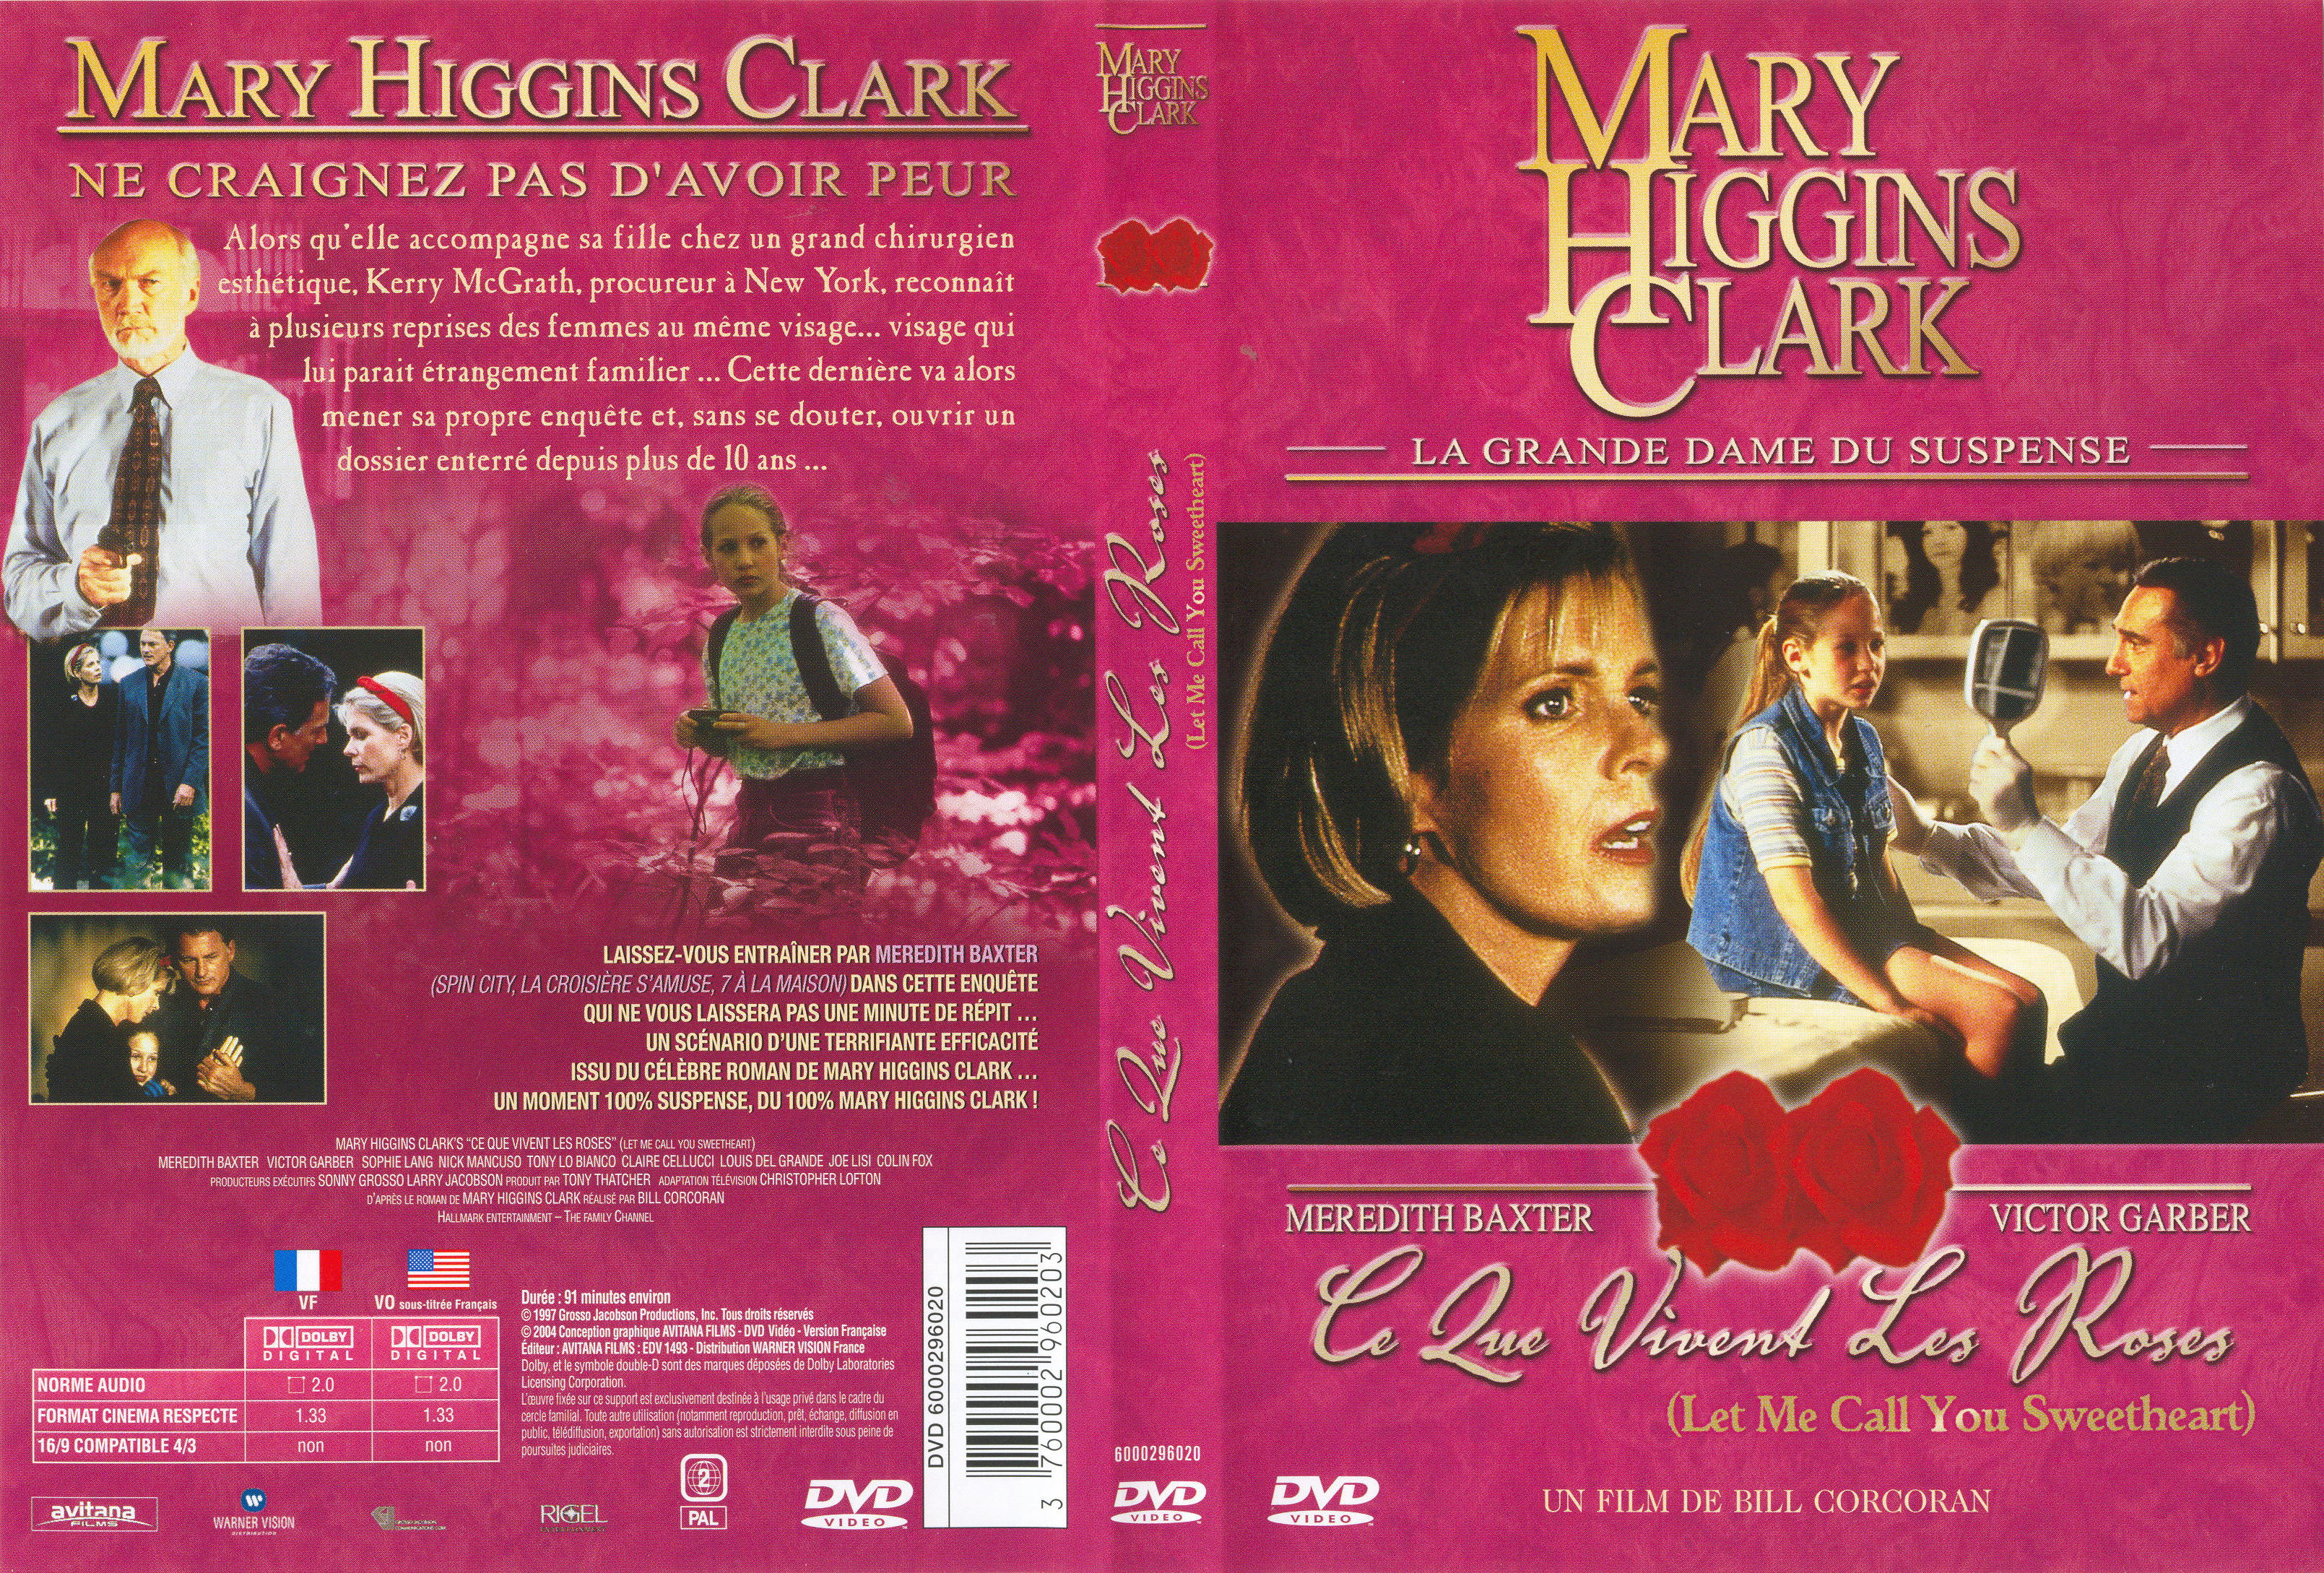 Jaquette DVD de Mary Higgins Clark - Ce que vivent les Roses - Cinéma Passion